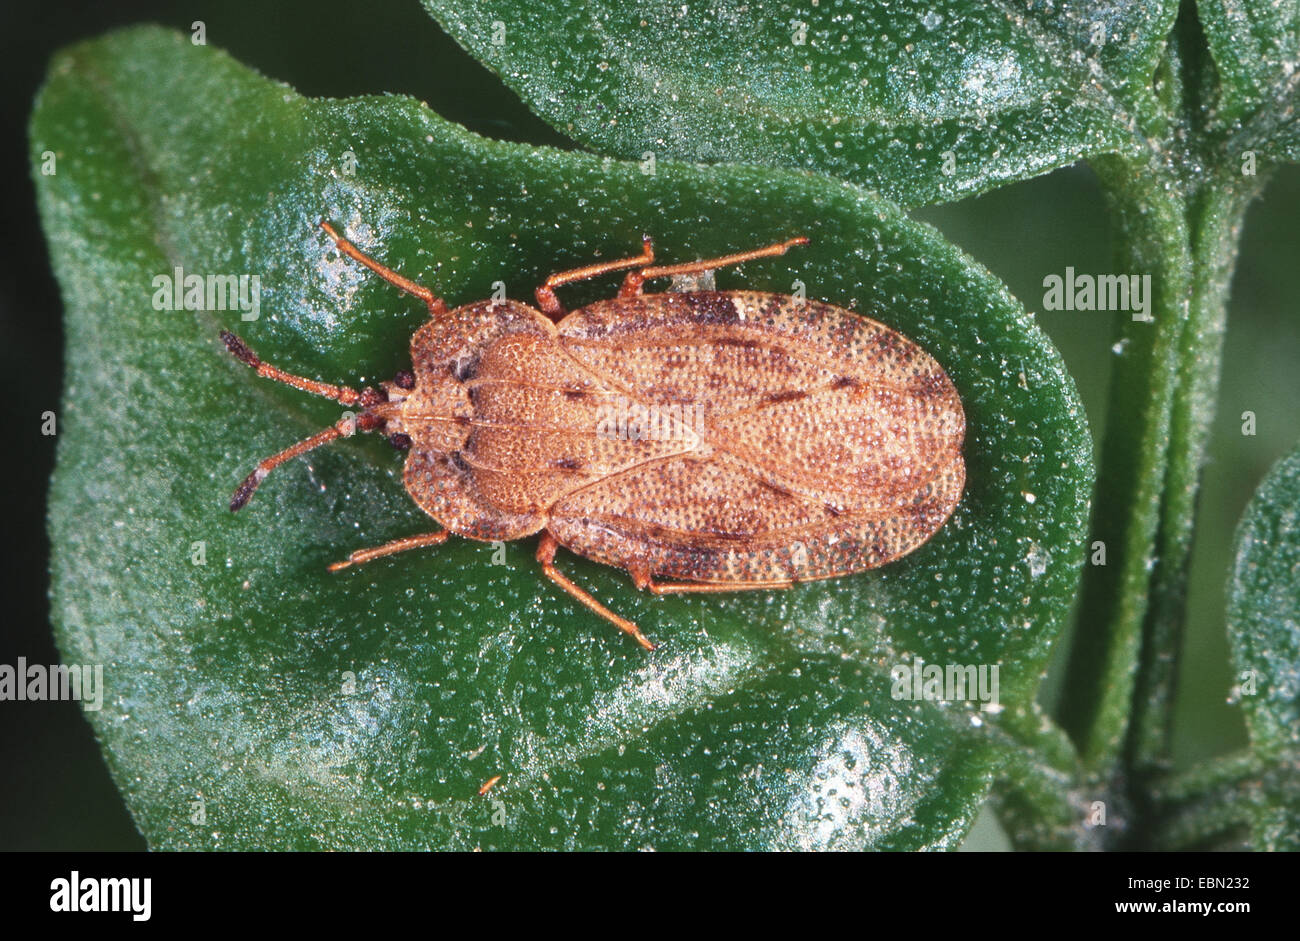 lace bug (Tingis amplicata), on a leaf Stock Photo